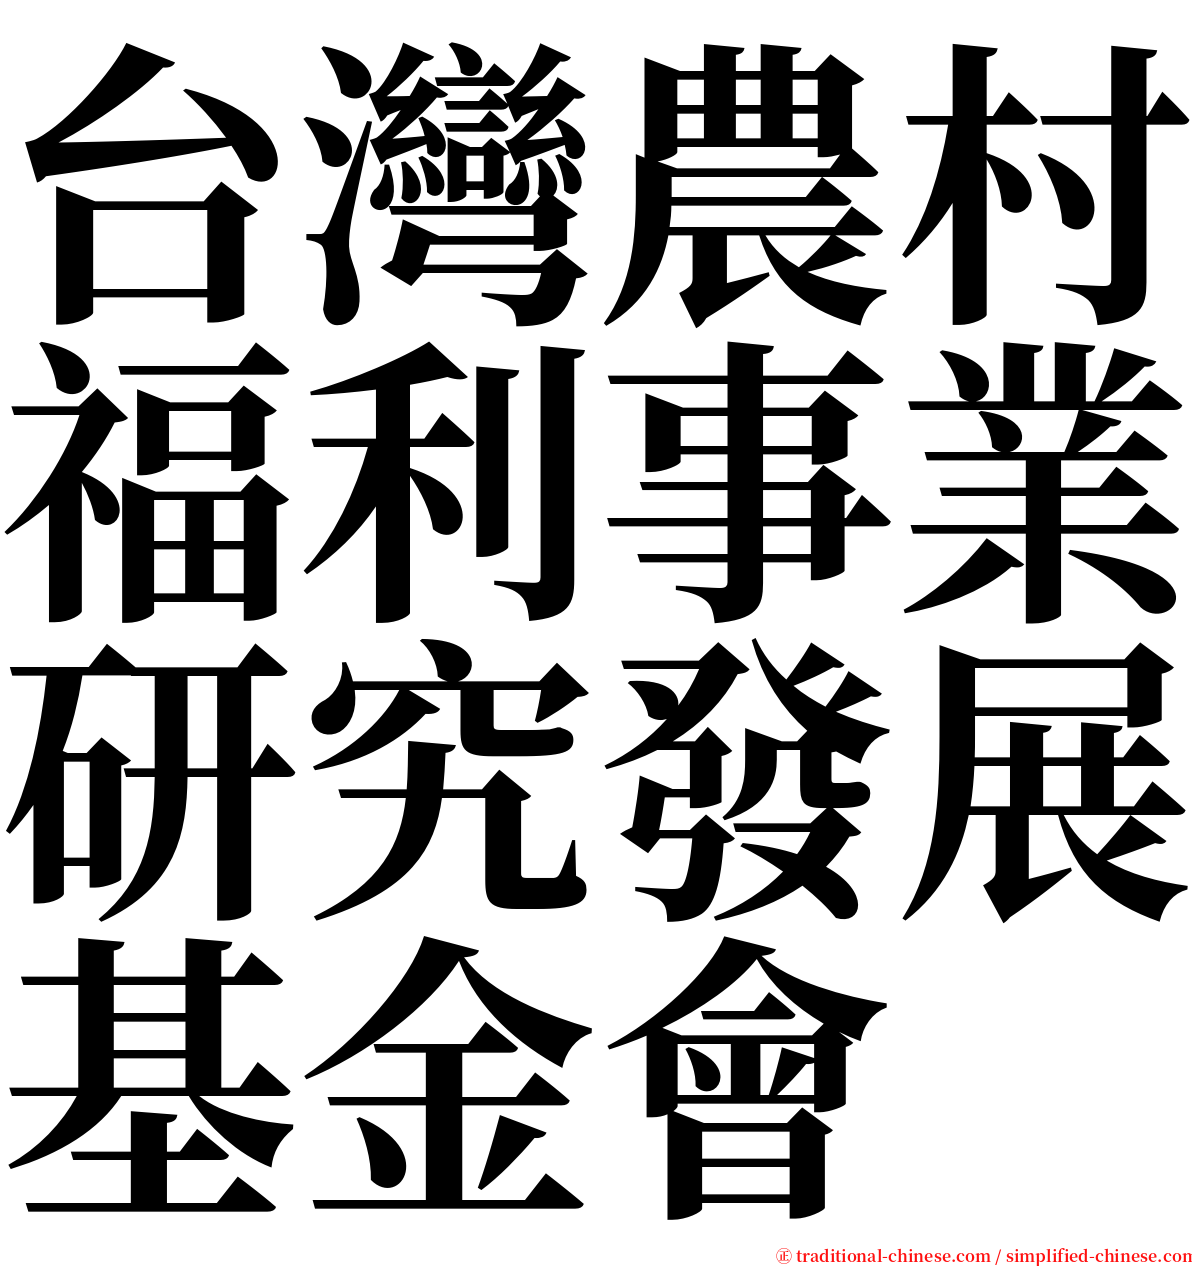 台灣農村福利事業研究發展基金會 serif font